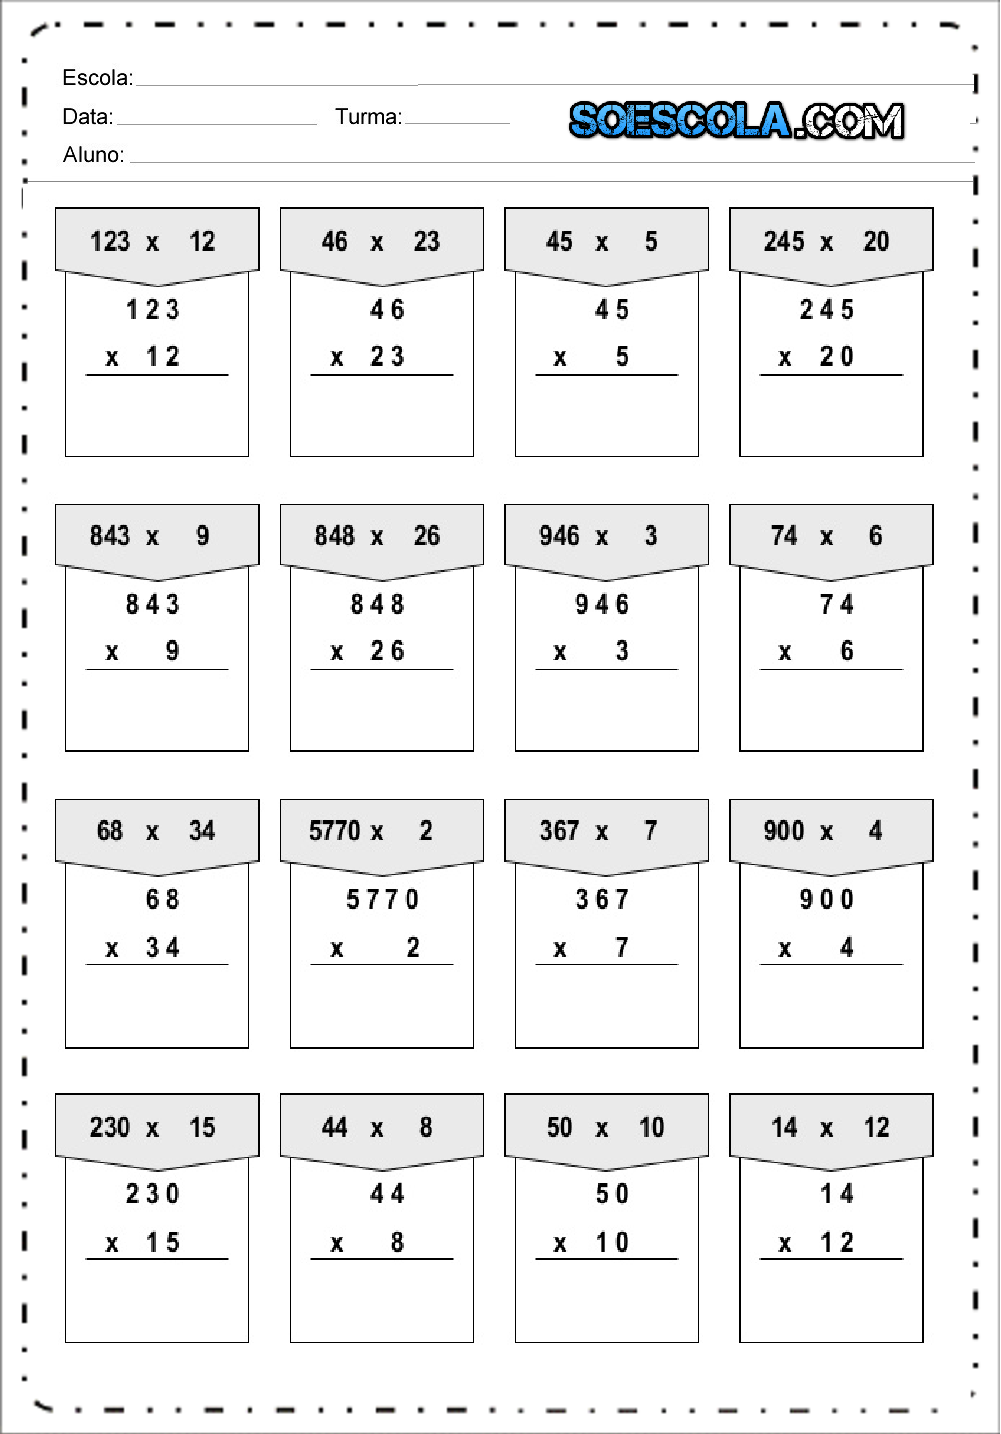 Atividades de multiplicação em pdf